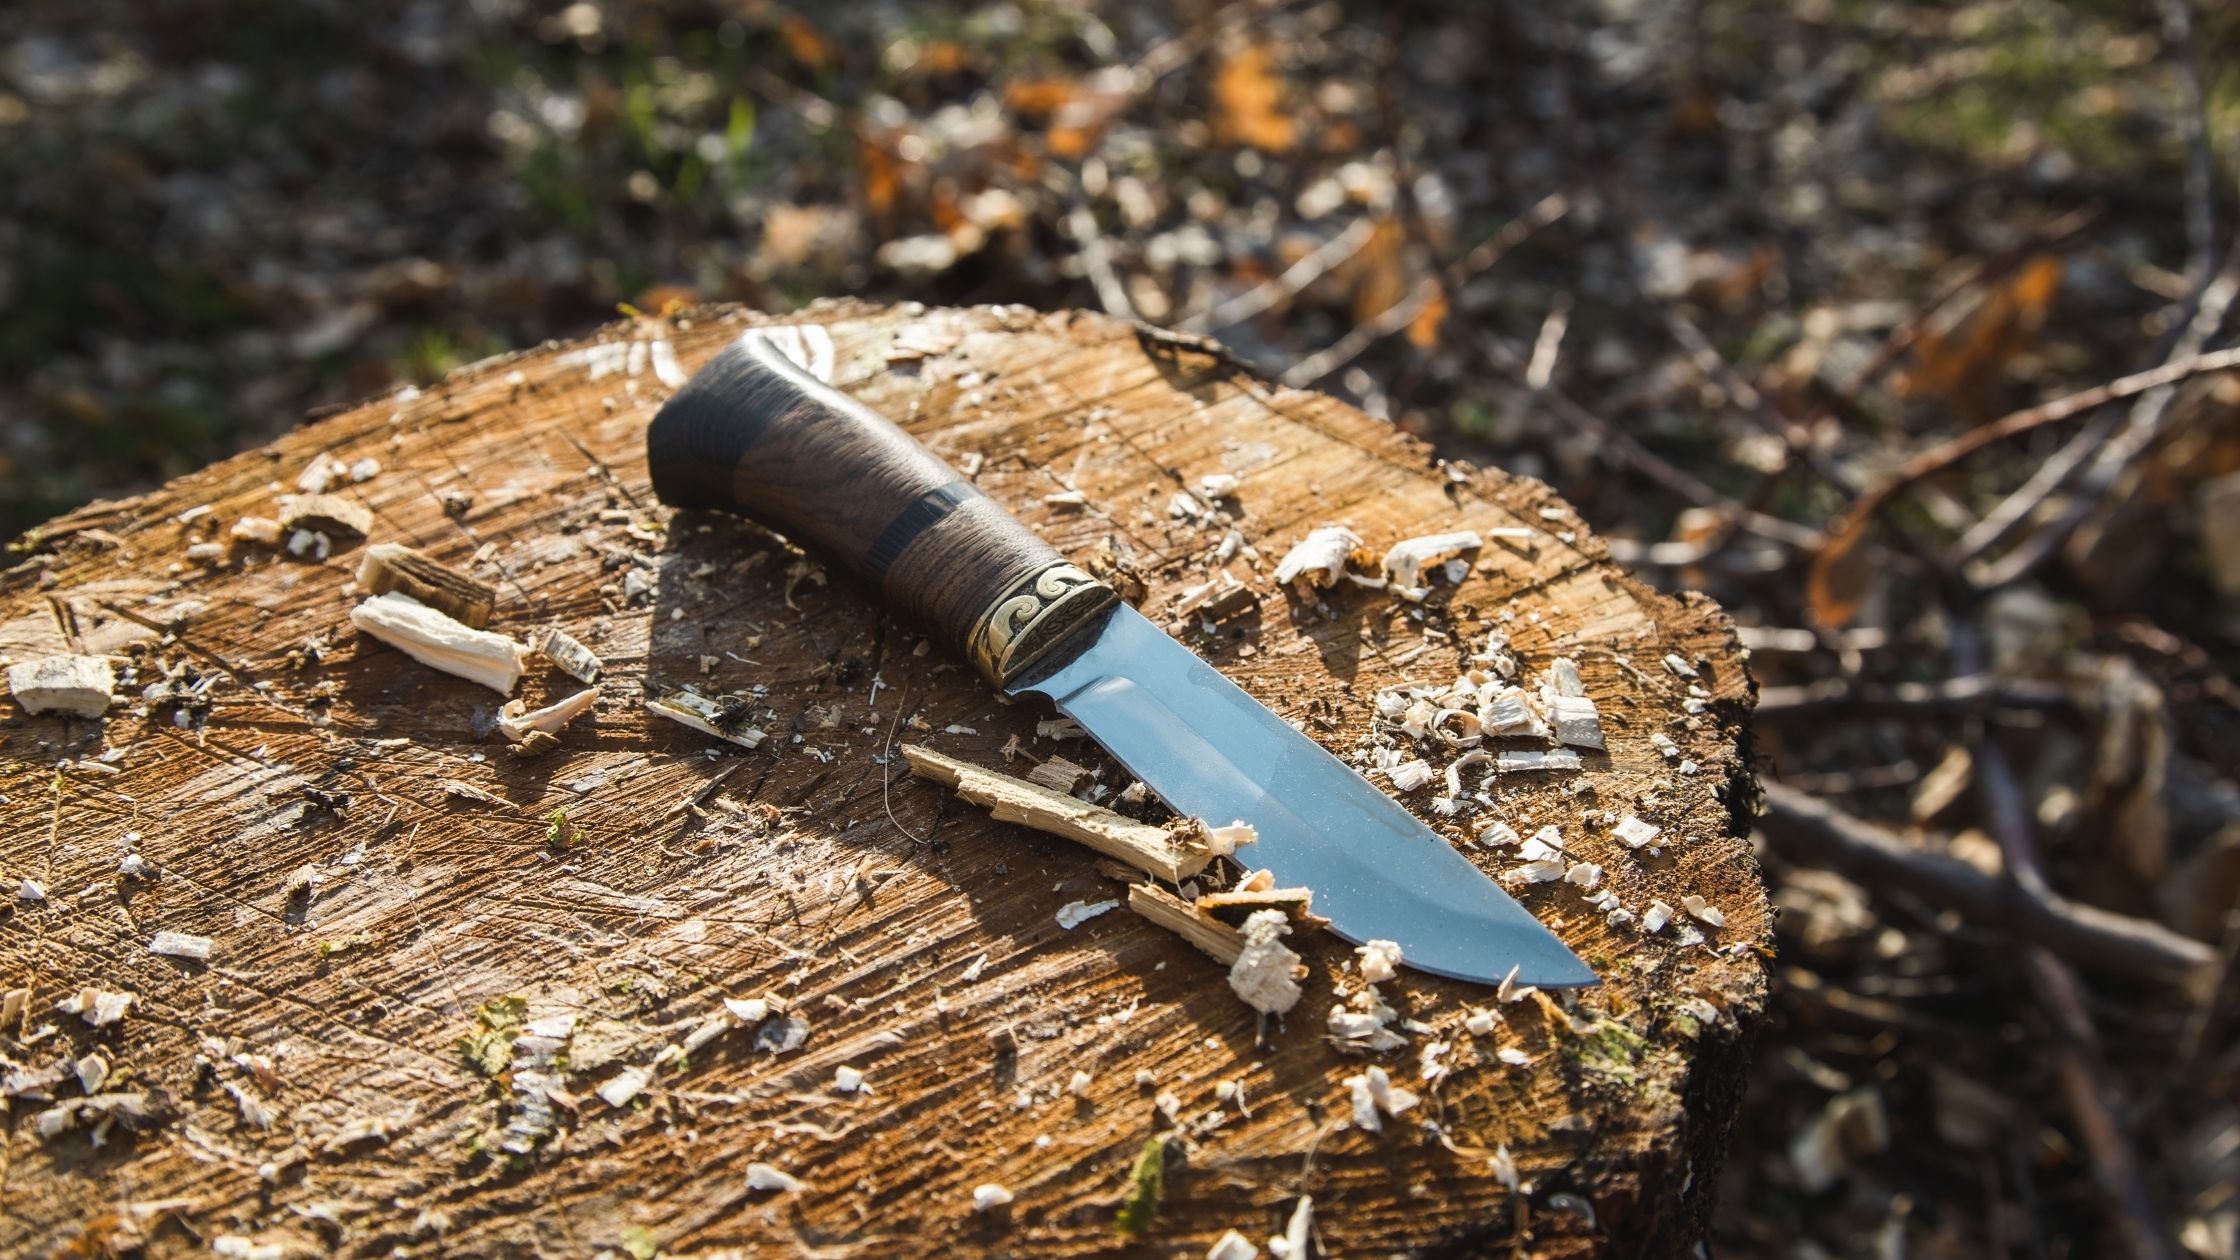 Types of garden knives: garden knife